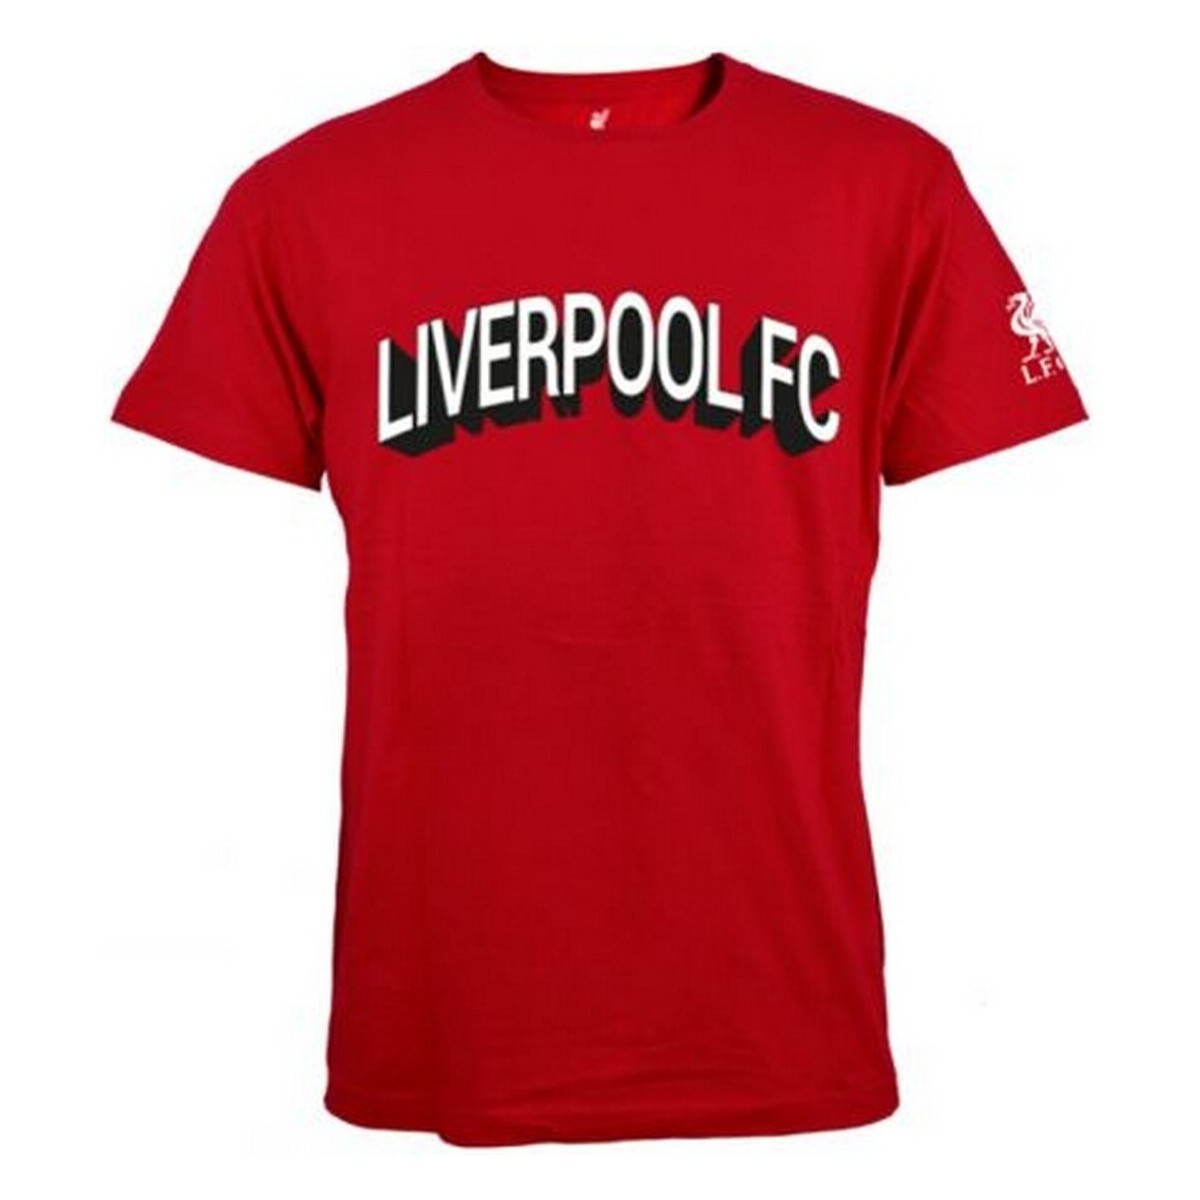 Vêtements Homme T-shirts manches longues Liverpool Fc BS3296 Rouge